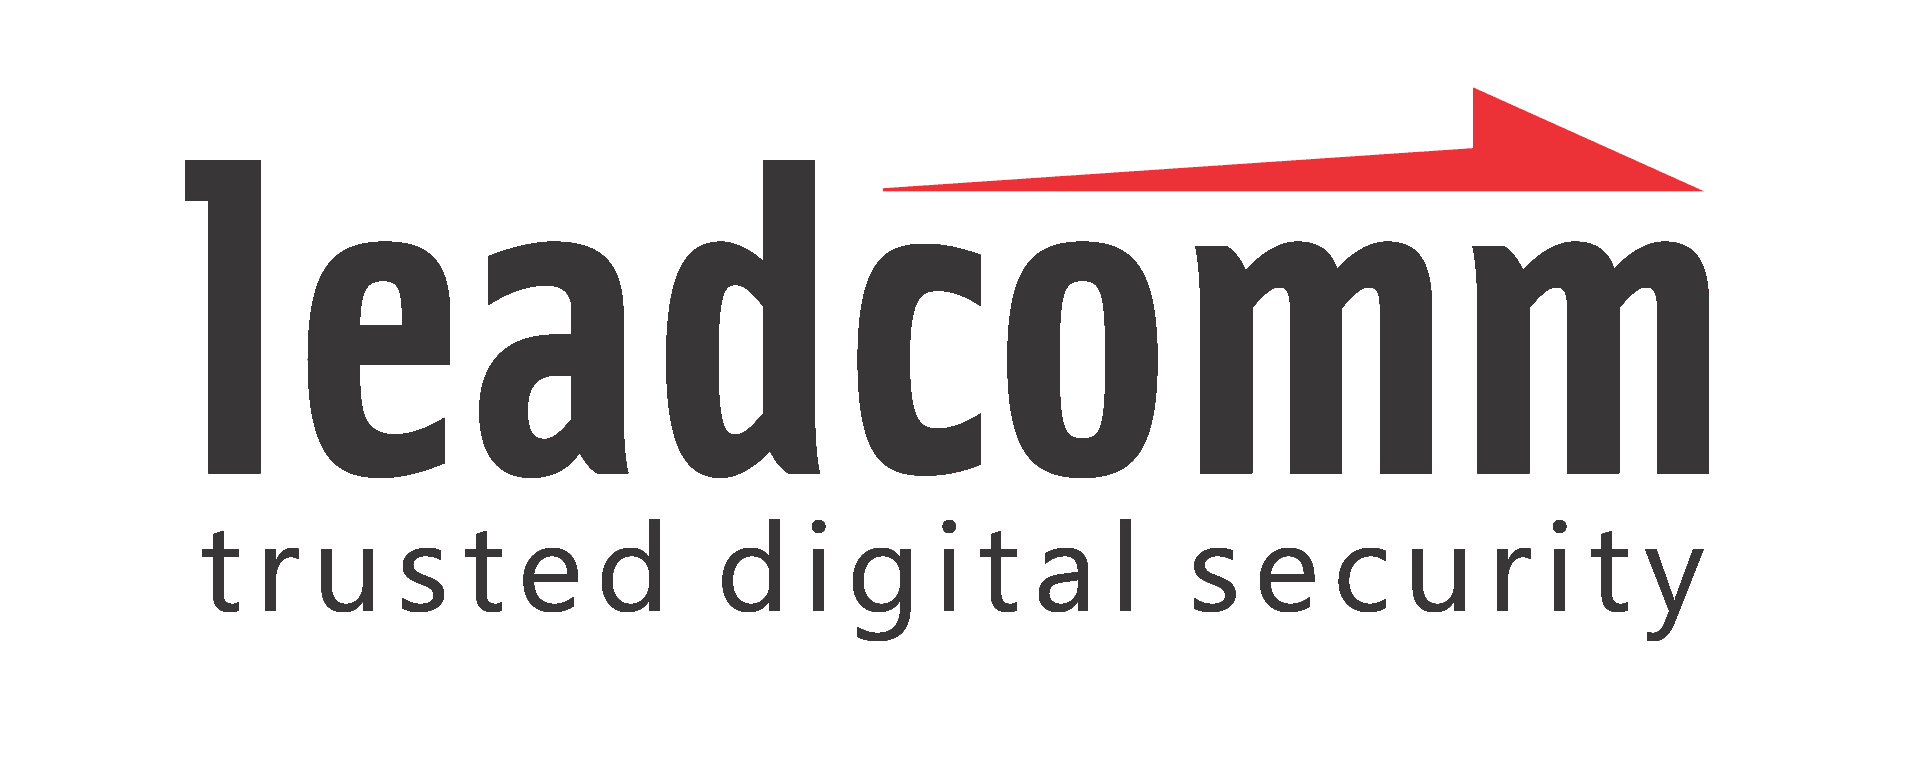 logo leadcomm